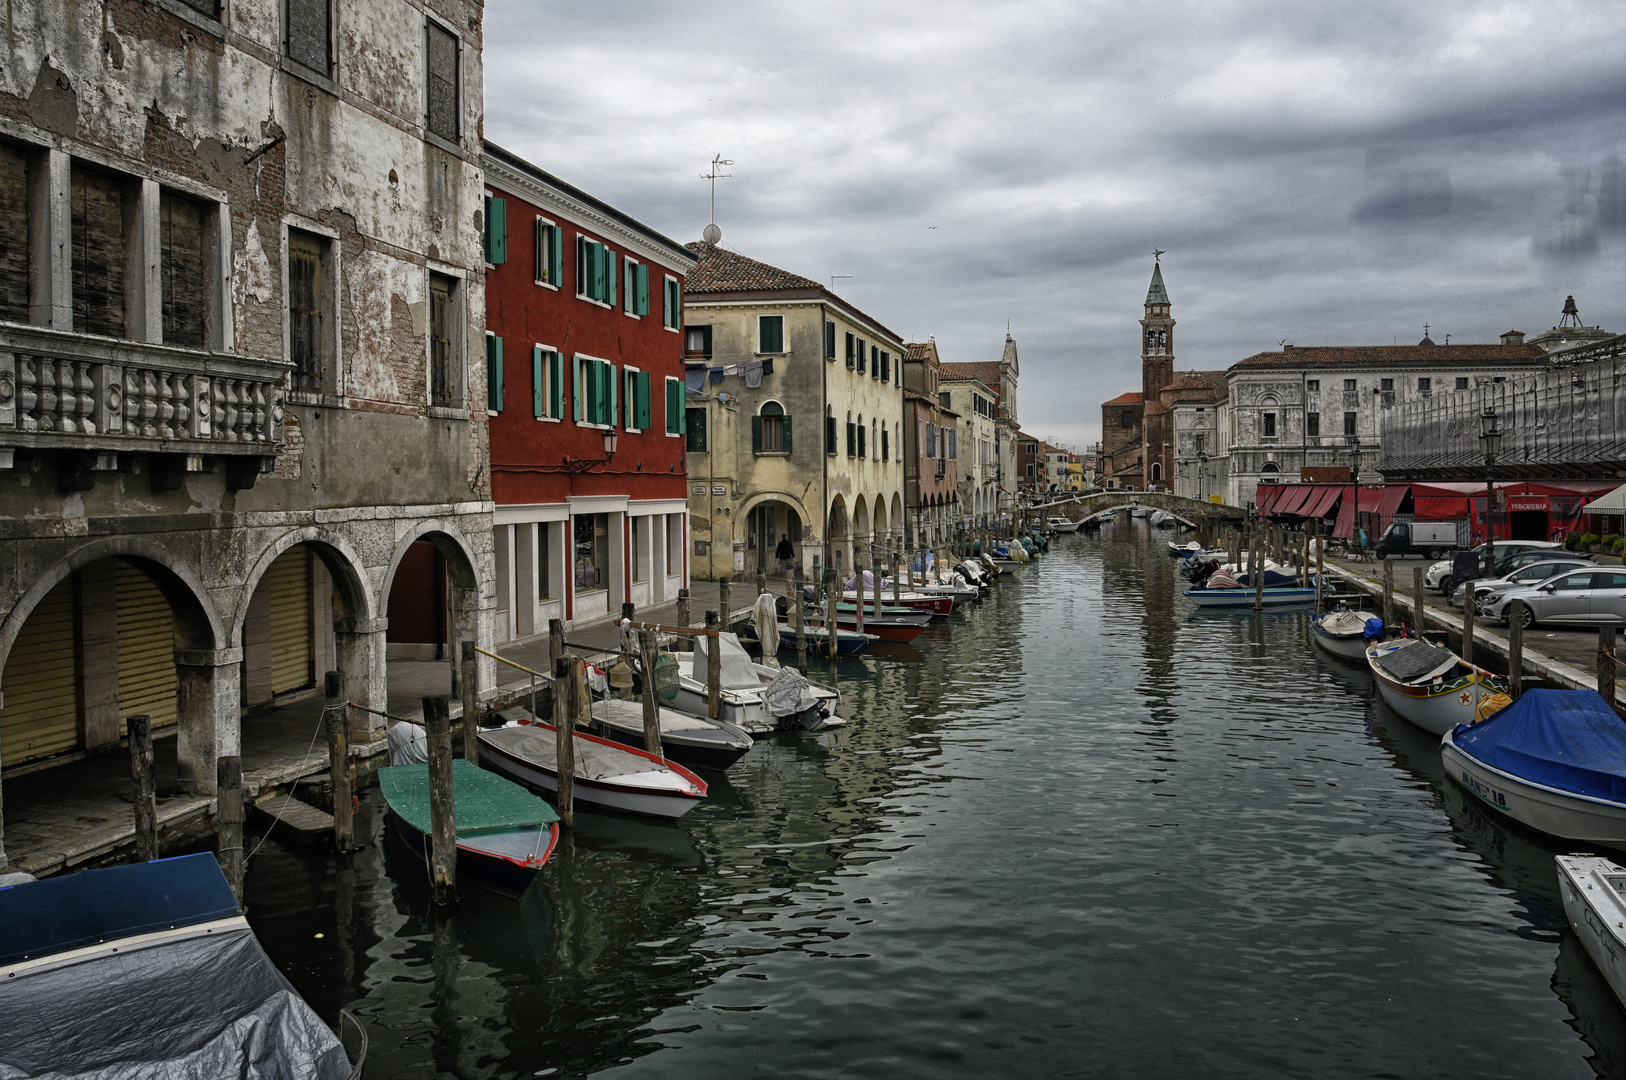 Chioggia - auch klein Venedig genannt  -